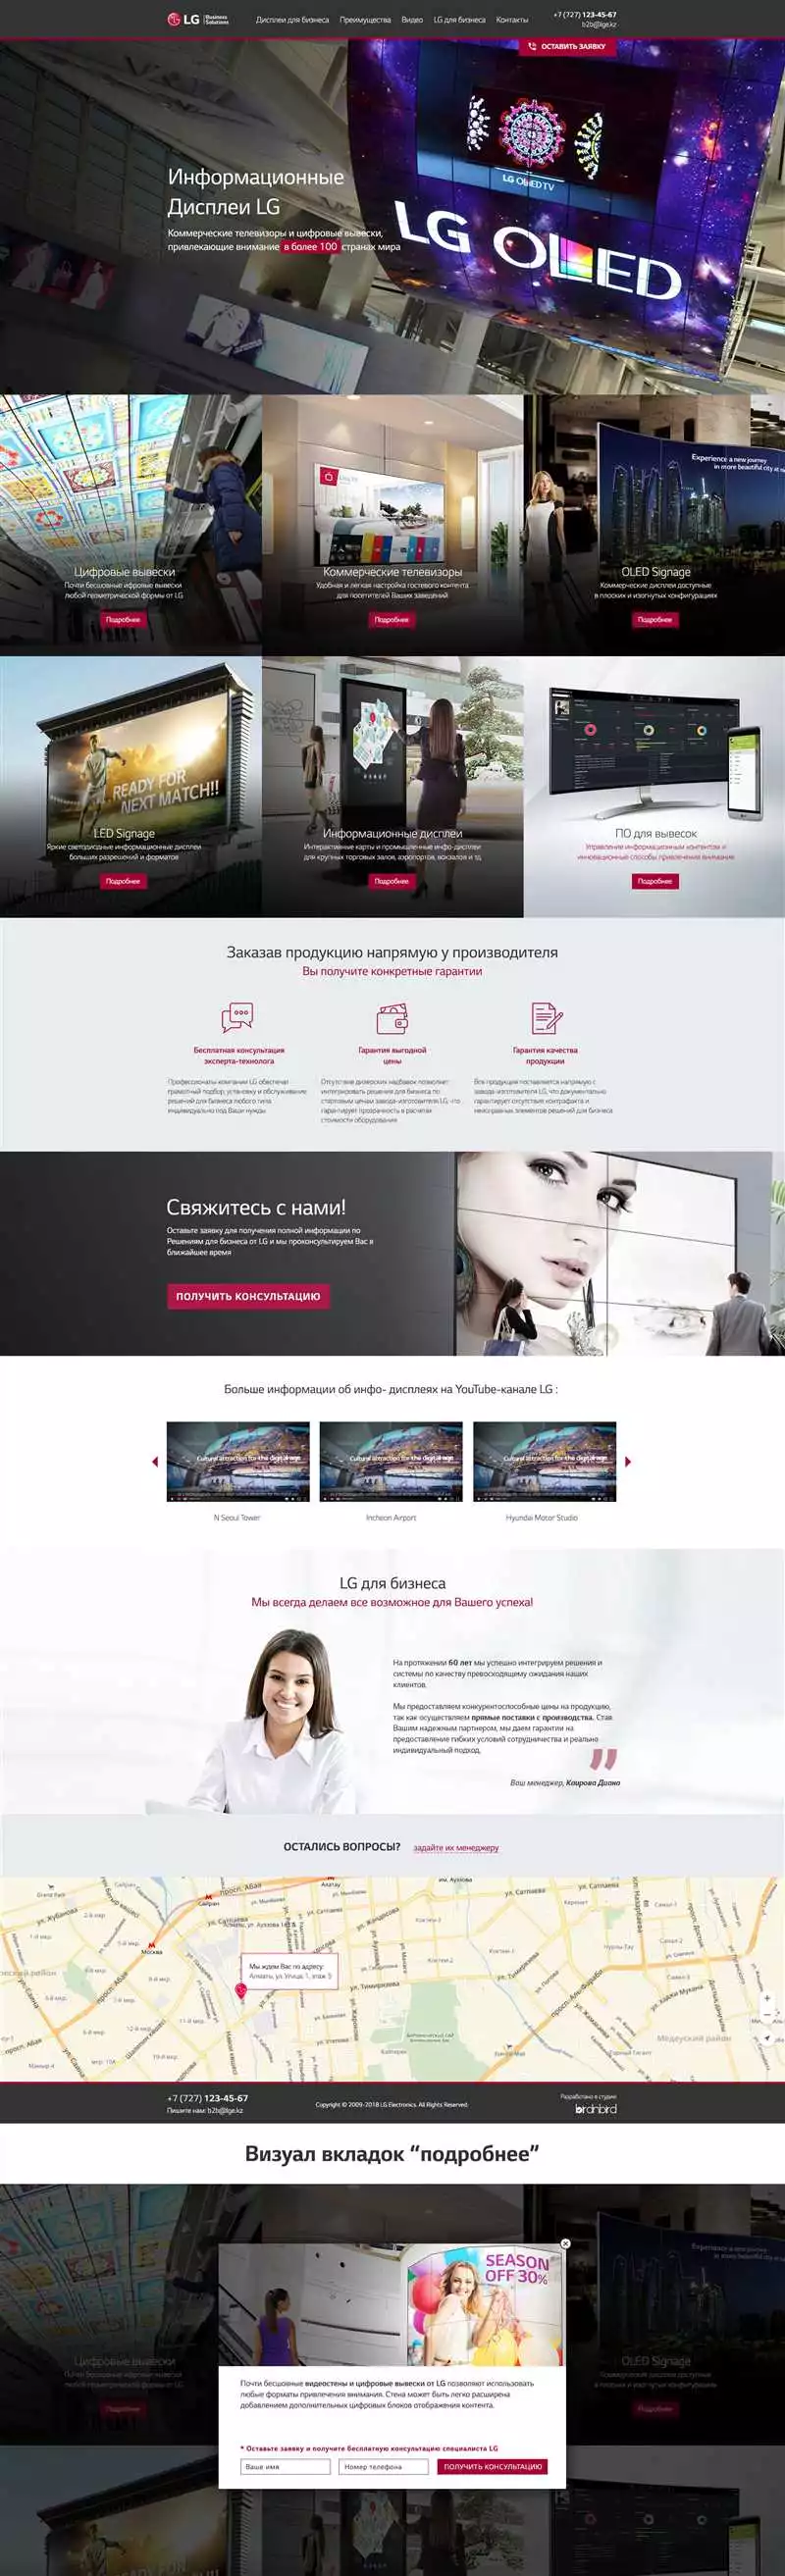 Увеличьте Конверсию И Привлекайте Больше Клиентов С Помощью Разработки Продающей Landing Page В Алматы